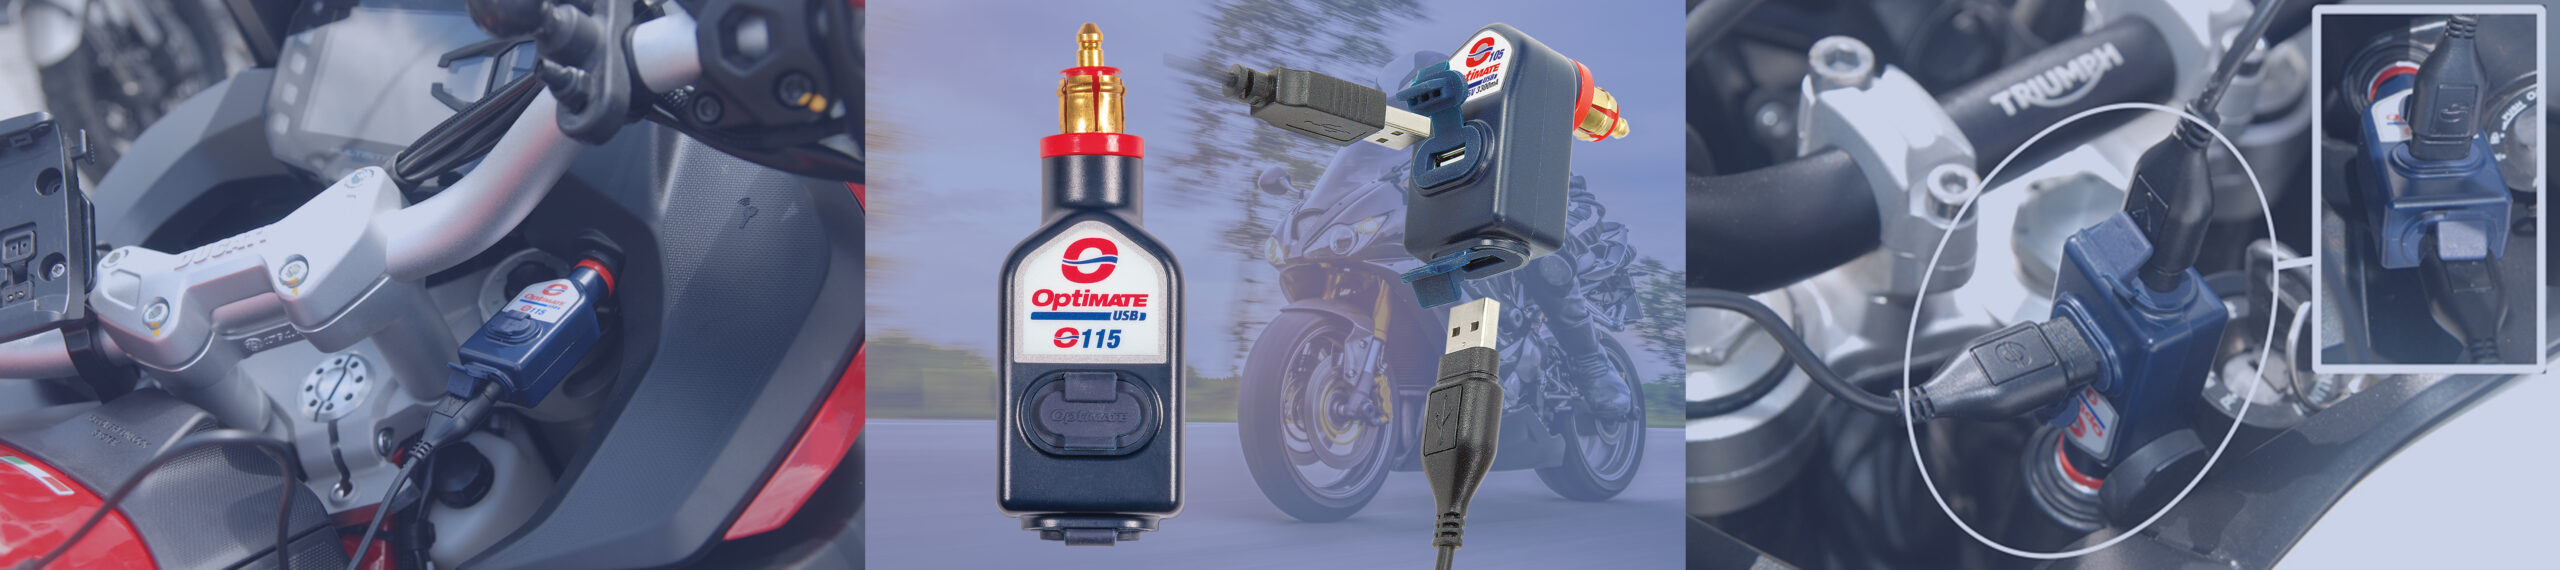 Caricatori USB OptiMate O-115 e O-105 collegati alle prese della moto